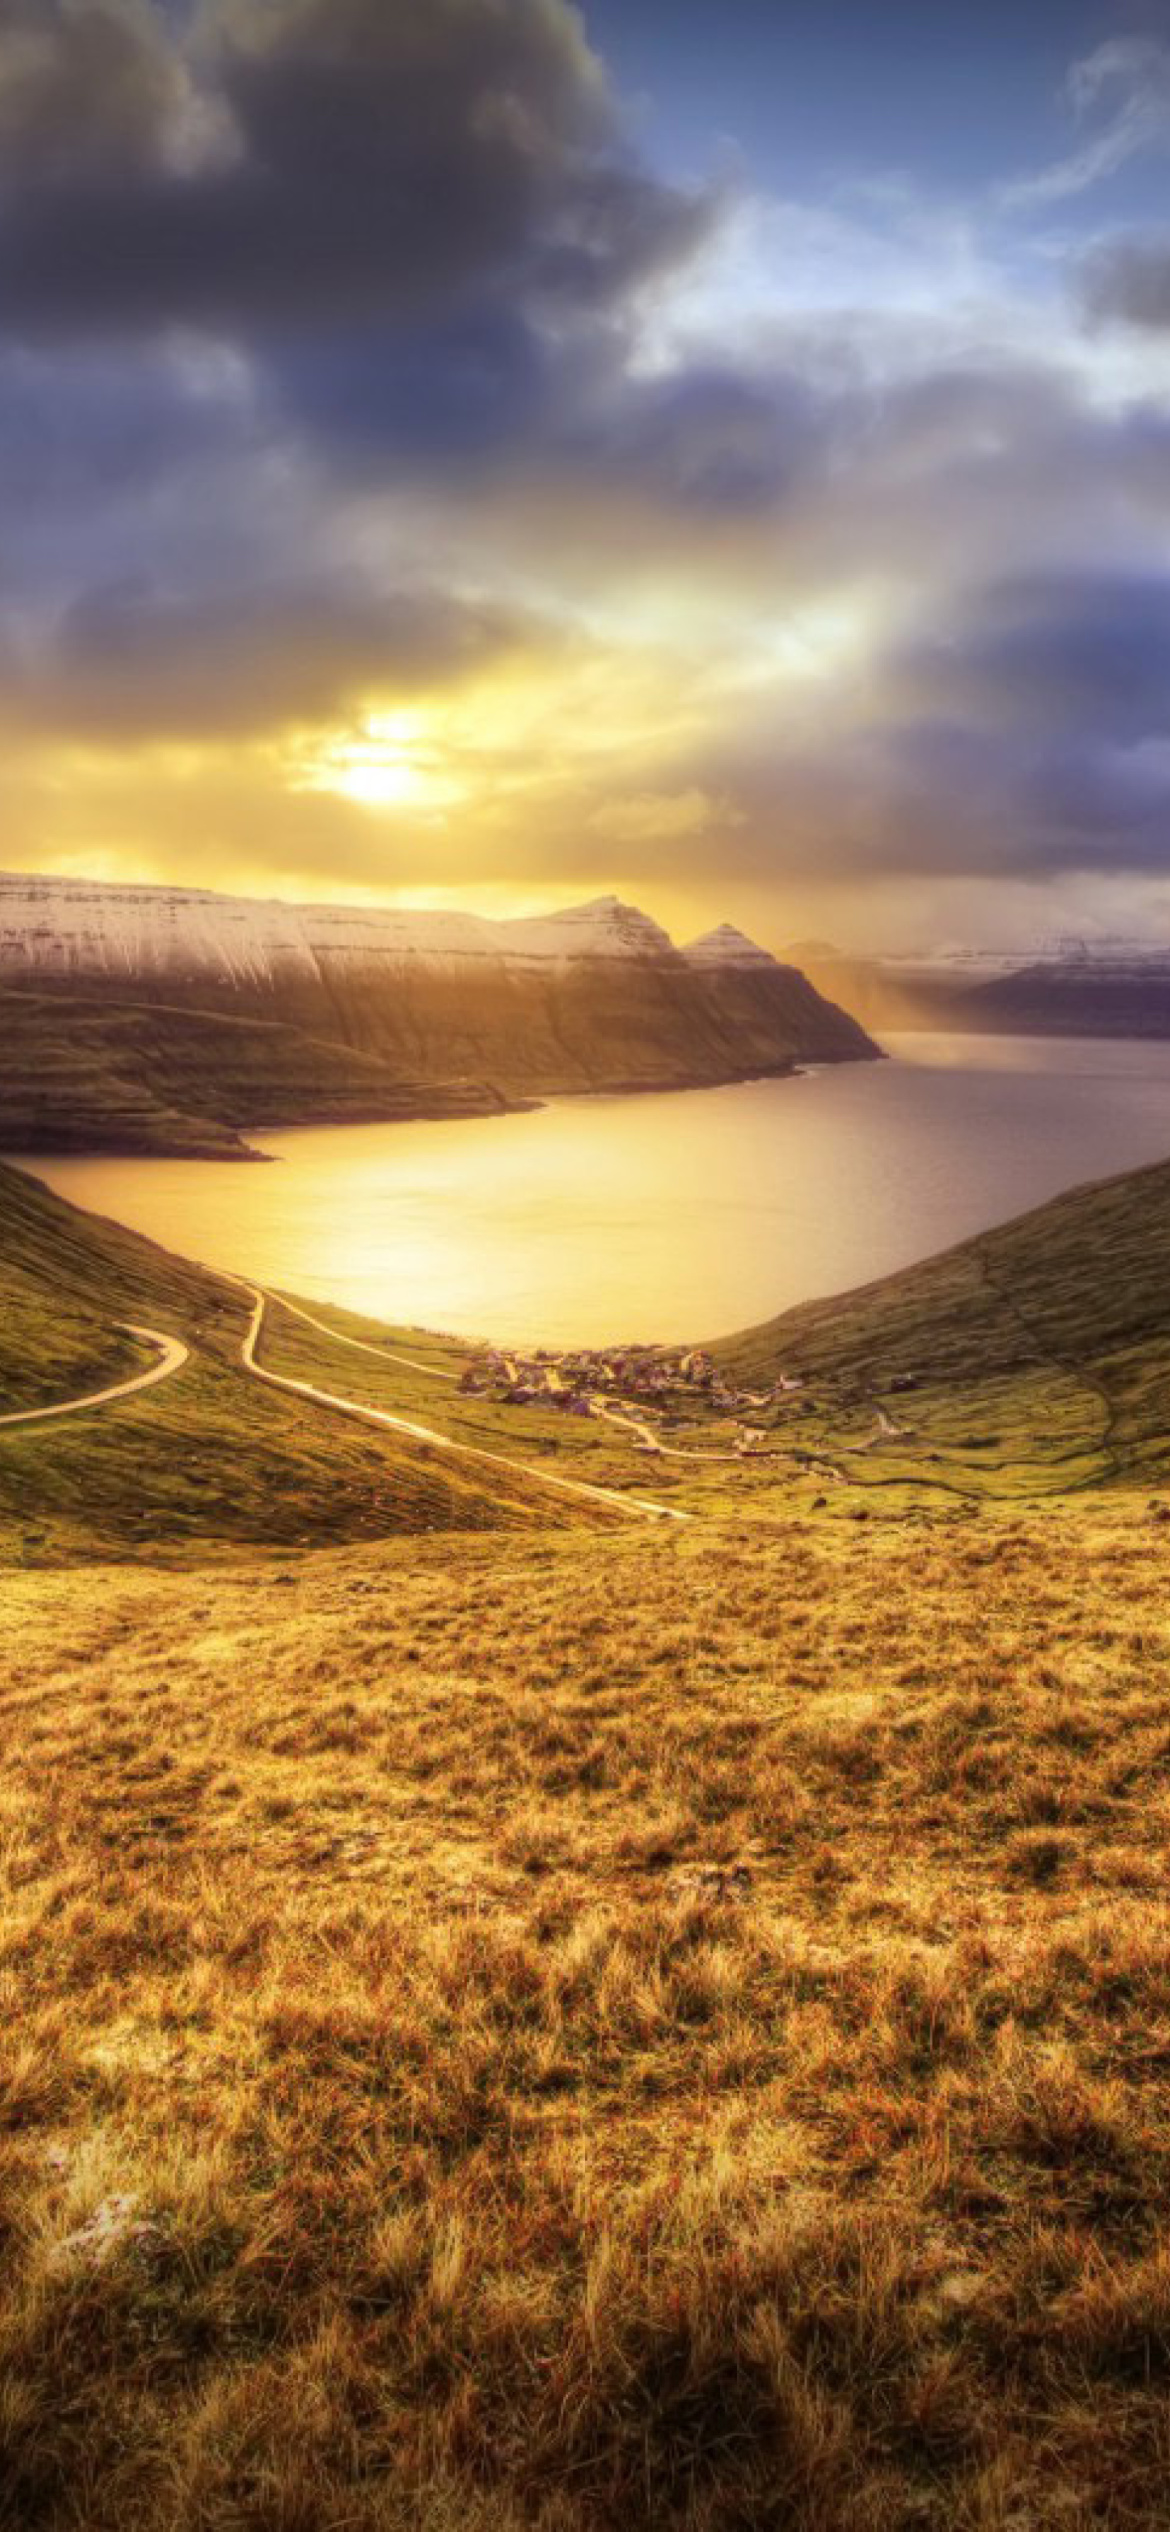 Sfondi Faroe Islands Landscape 1170x2532